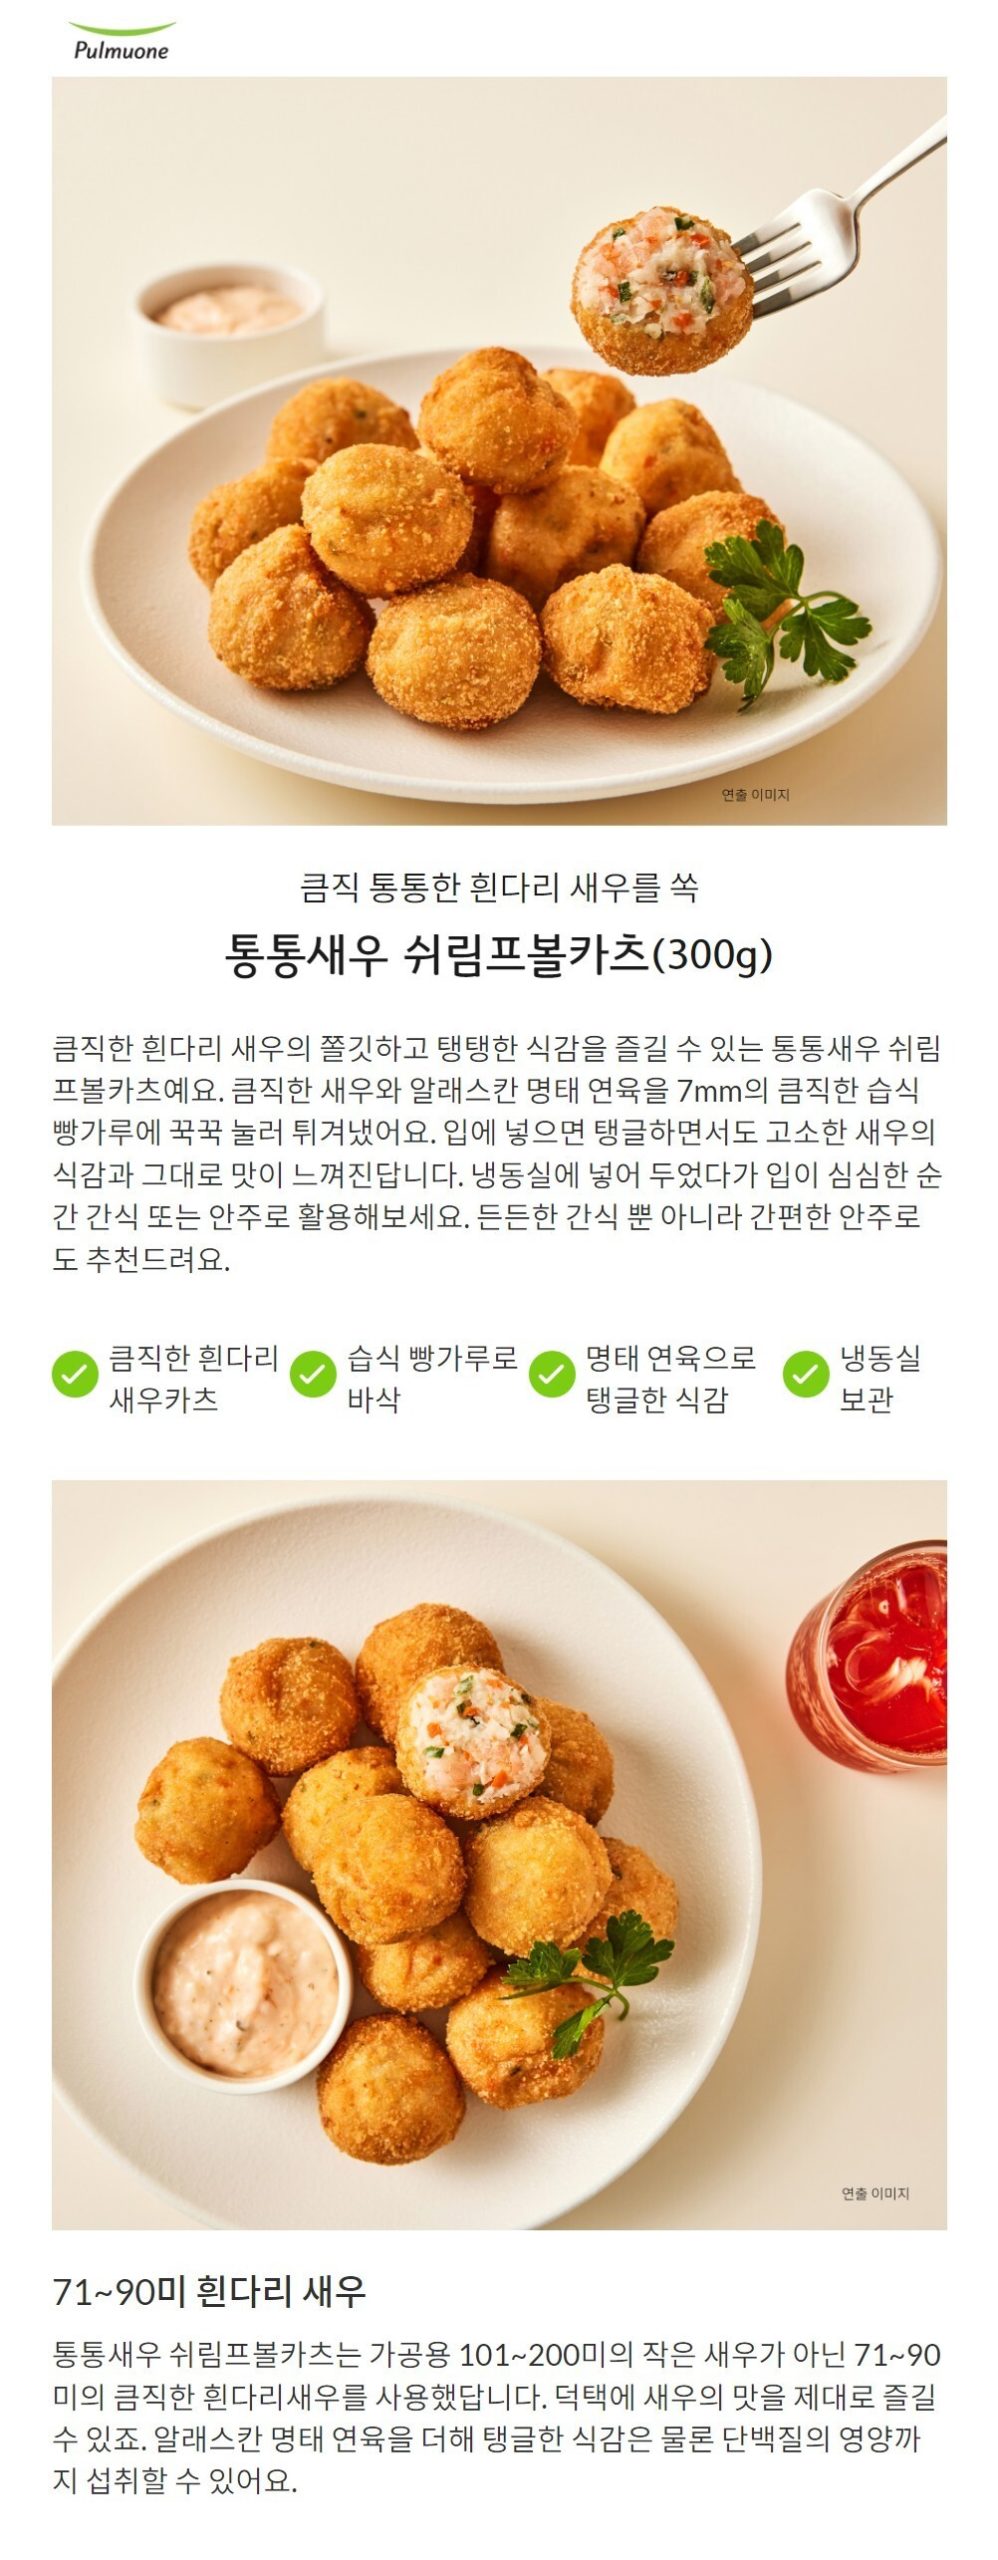 韓國食品-[풀무원] 통통새우 볼카츠 300g